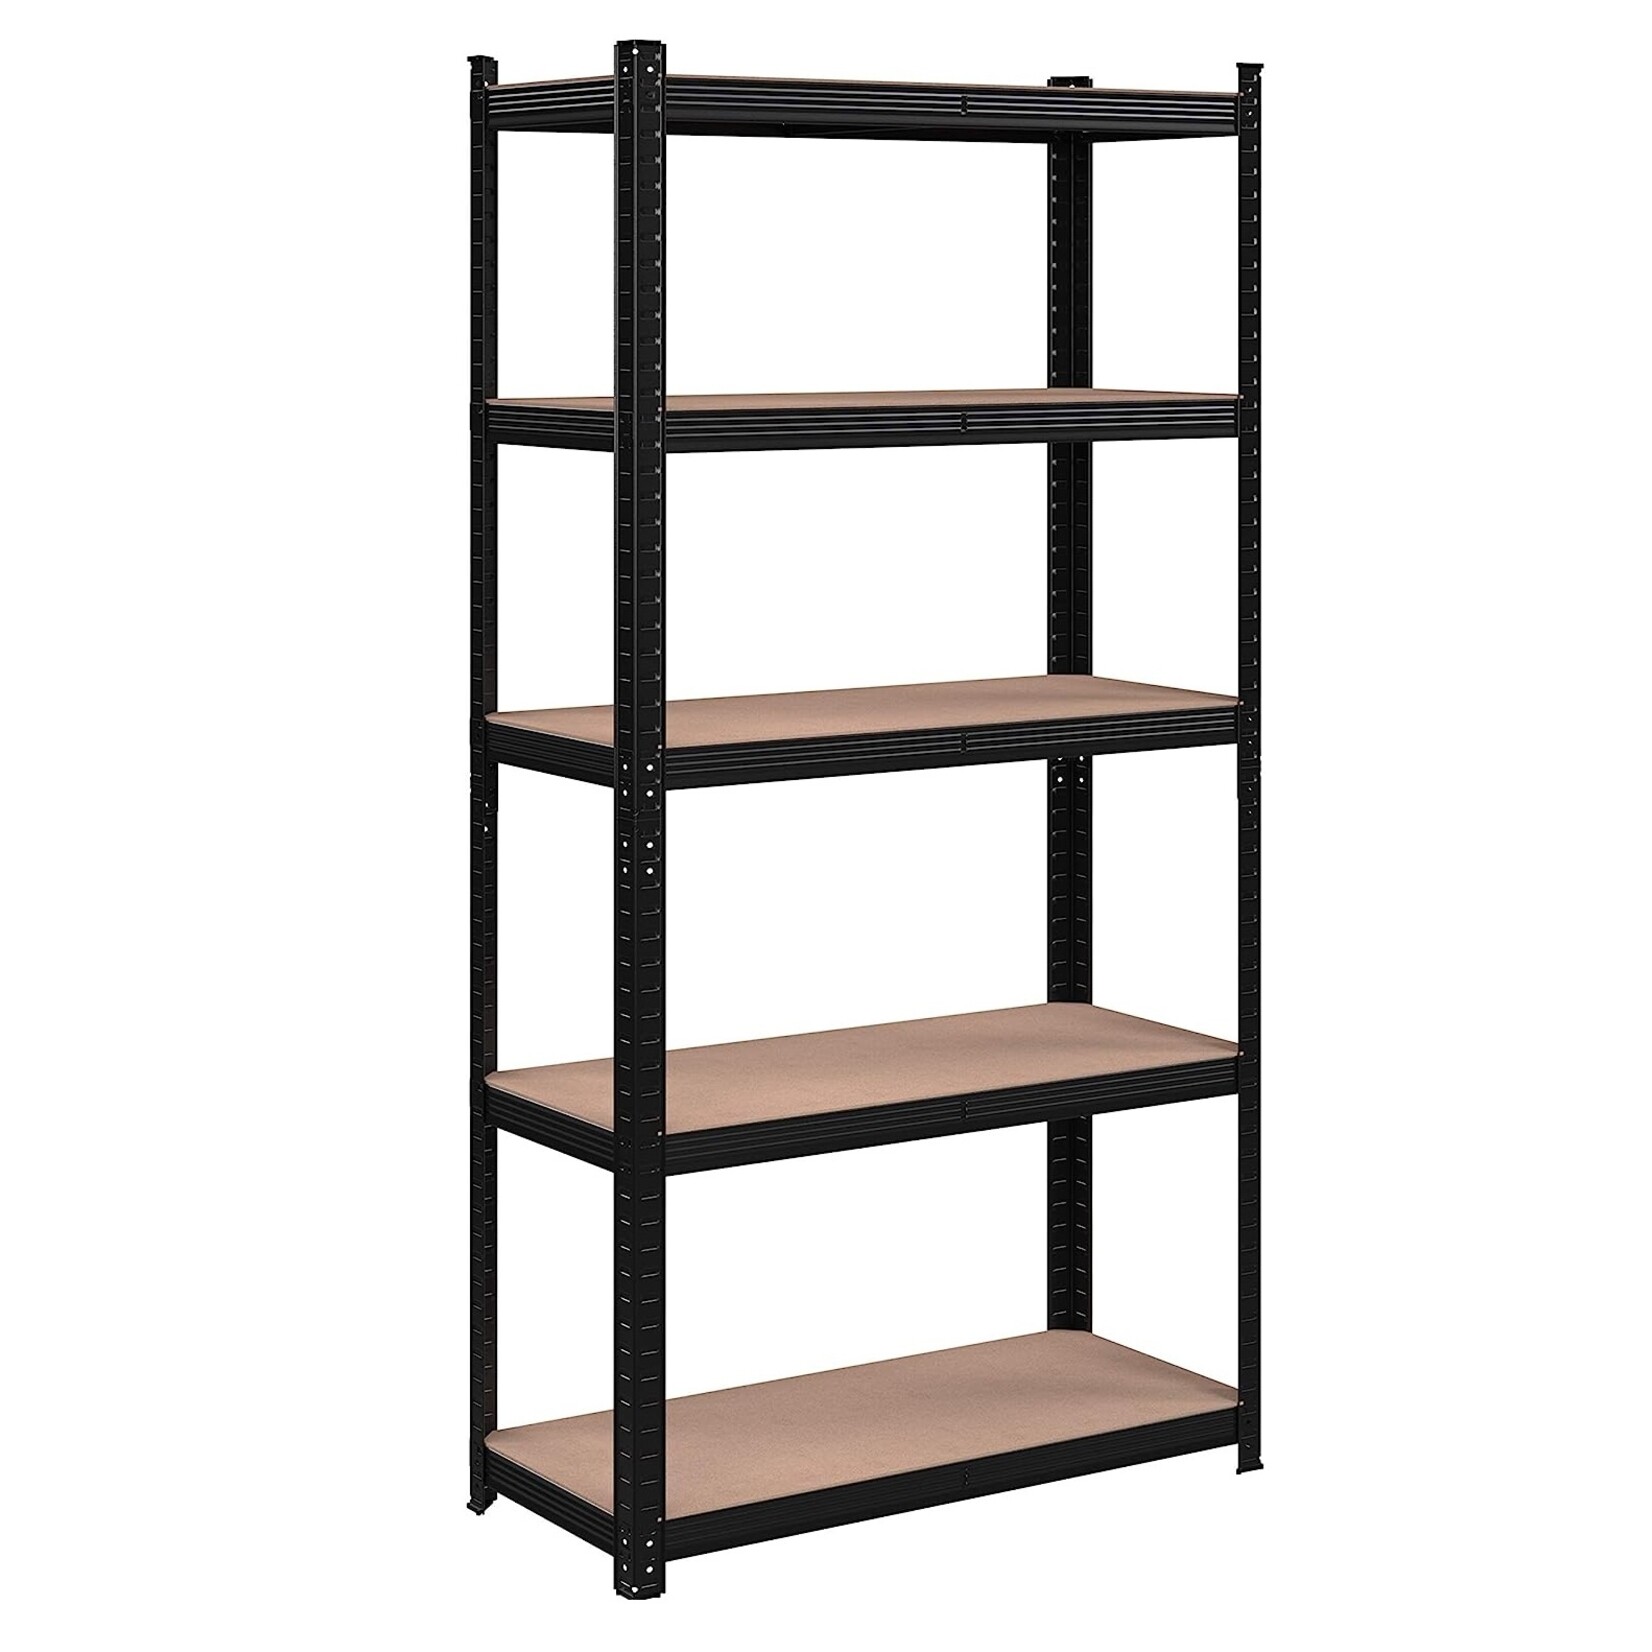 Bobbel Home Bobbel Garden- Shelf unit - 5 shelves - 180 x 90 x 40 cm - Black